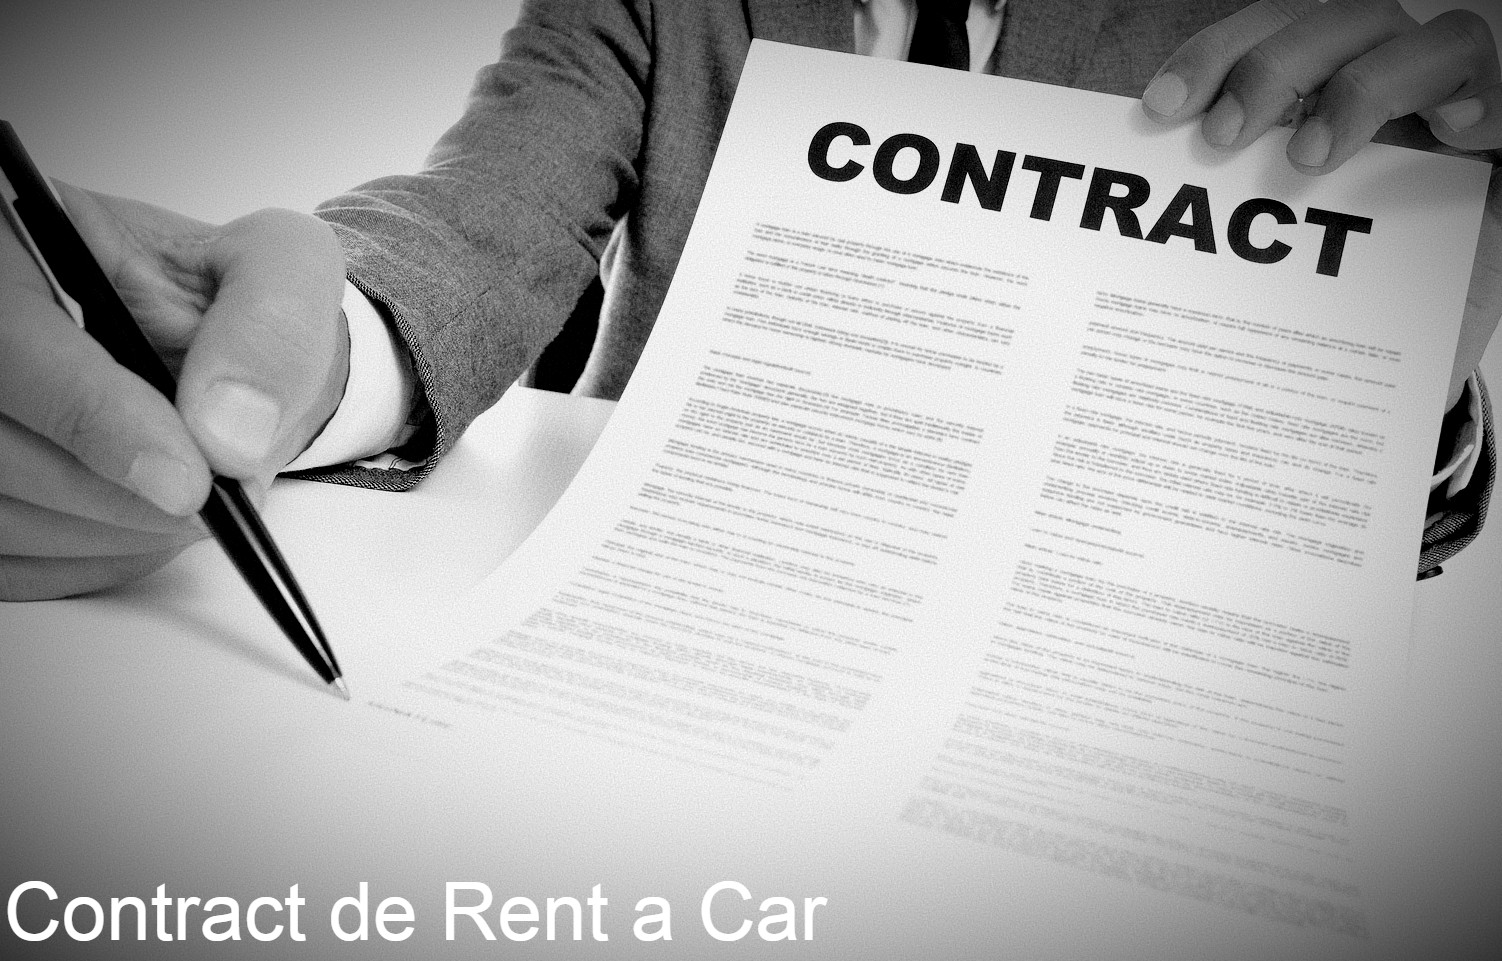 ce trebuie sa contina contractul de rent a car